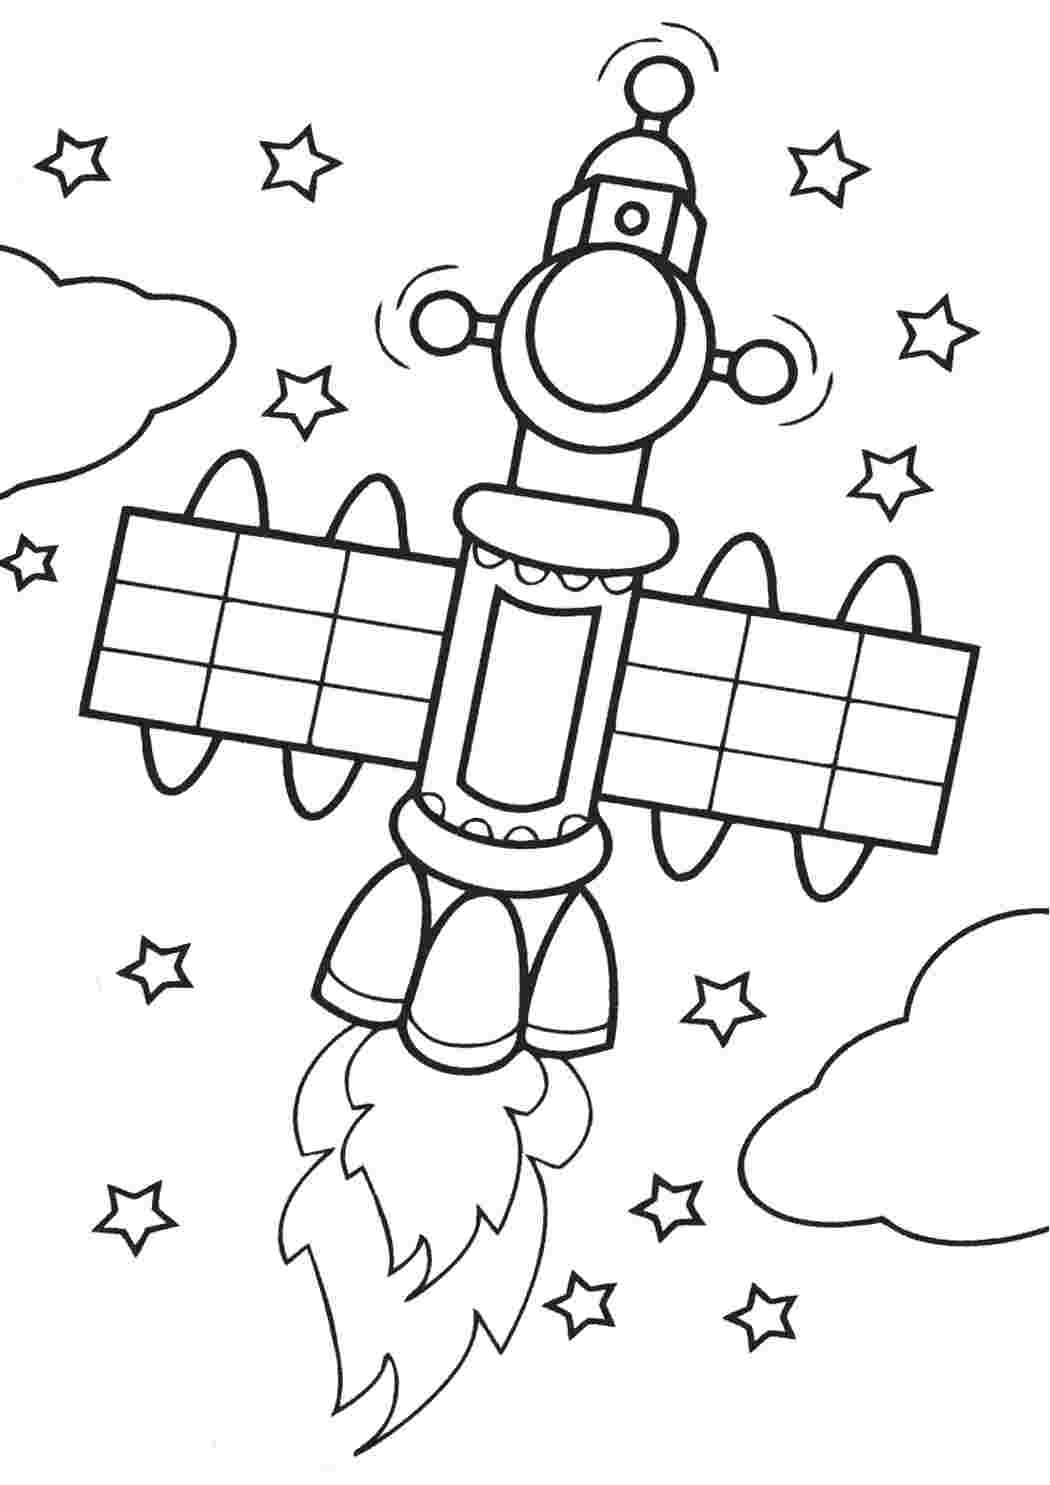 Раскраска космос 4 5 лет. Раскраска. В космосе. Космос раскраска для детей. Раскраска для малышей. Космос. Раскраска на тему космос для детей.